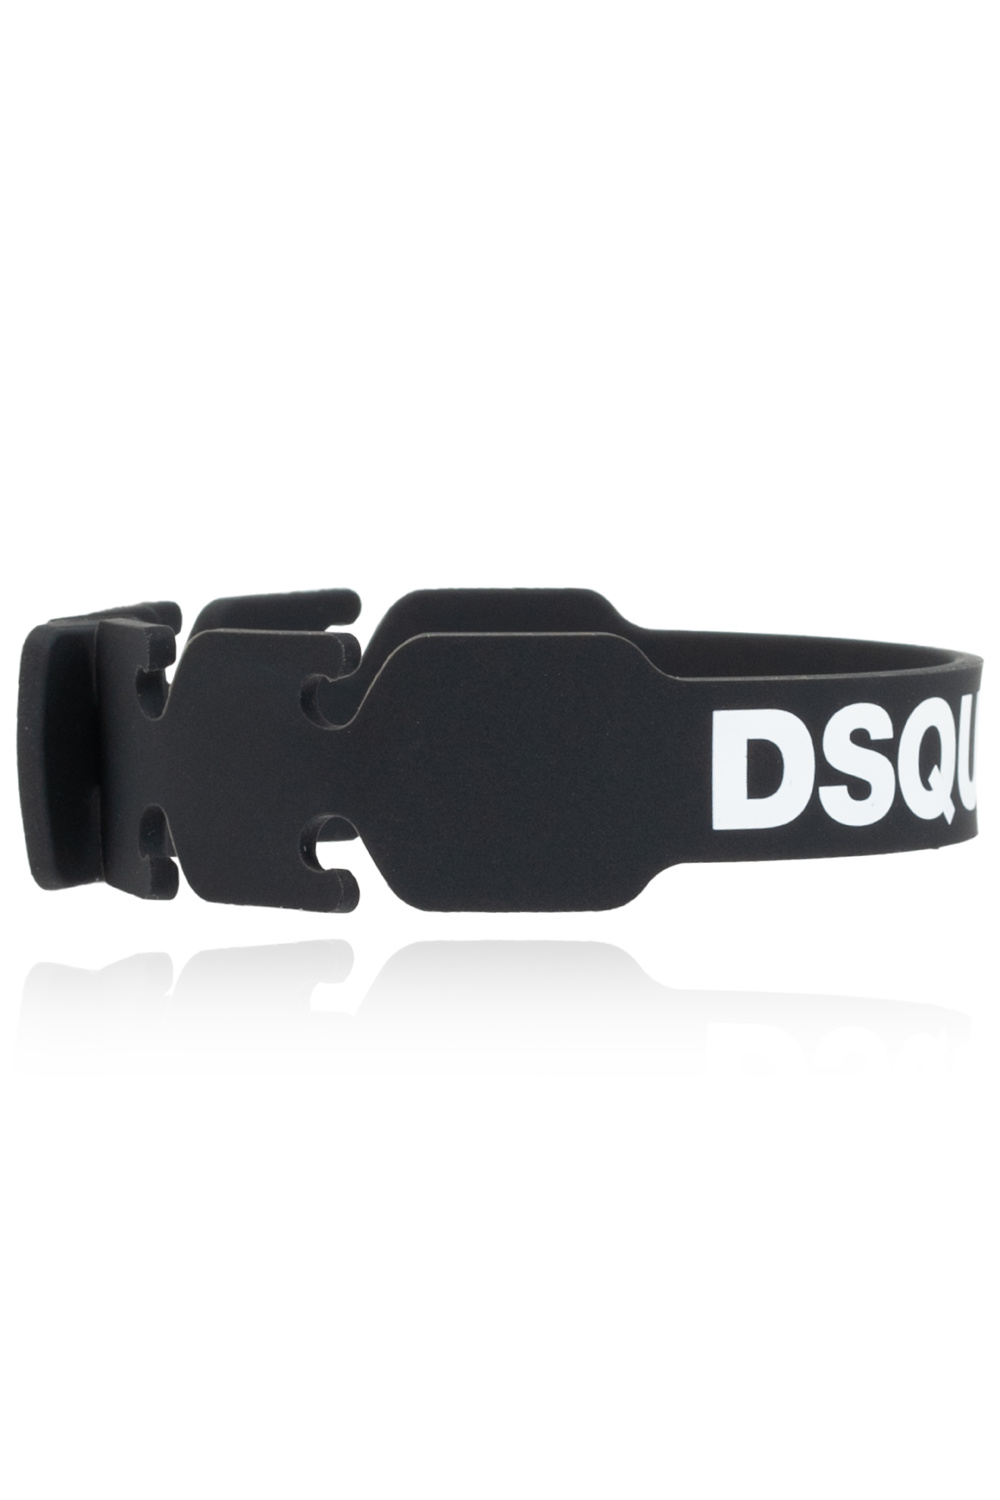 Dsquared2 Branded mask strap